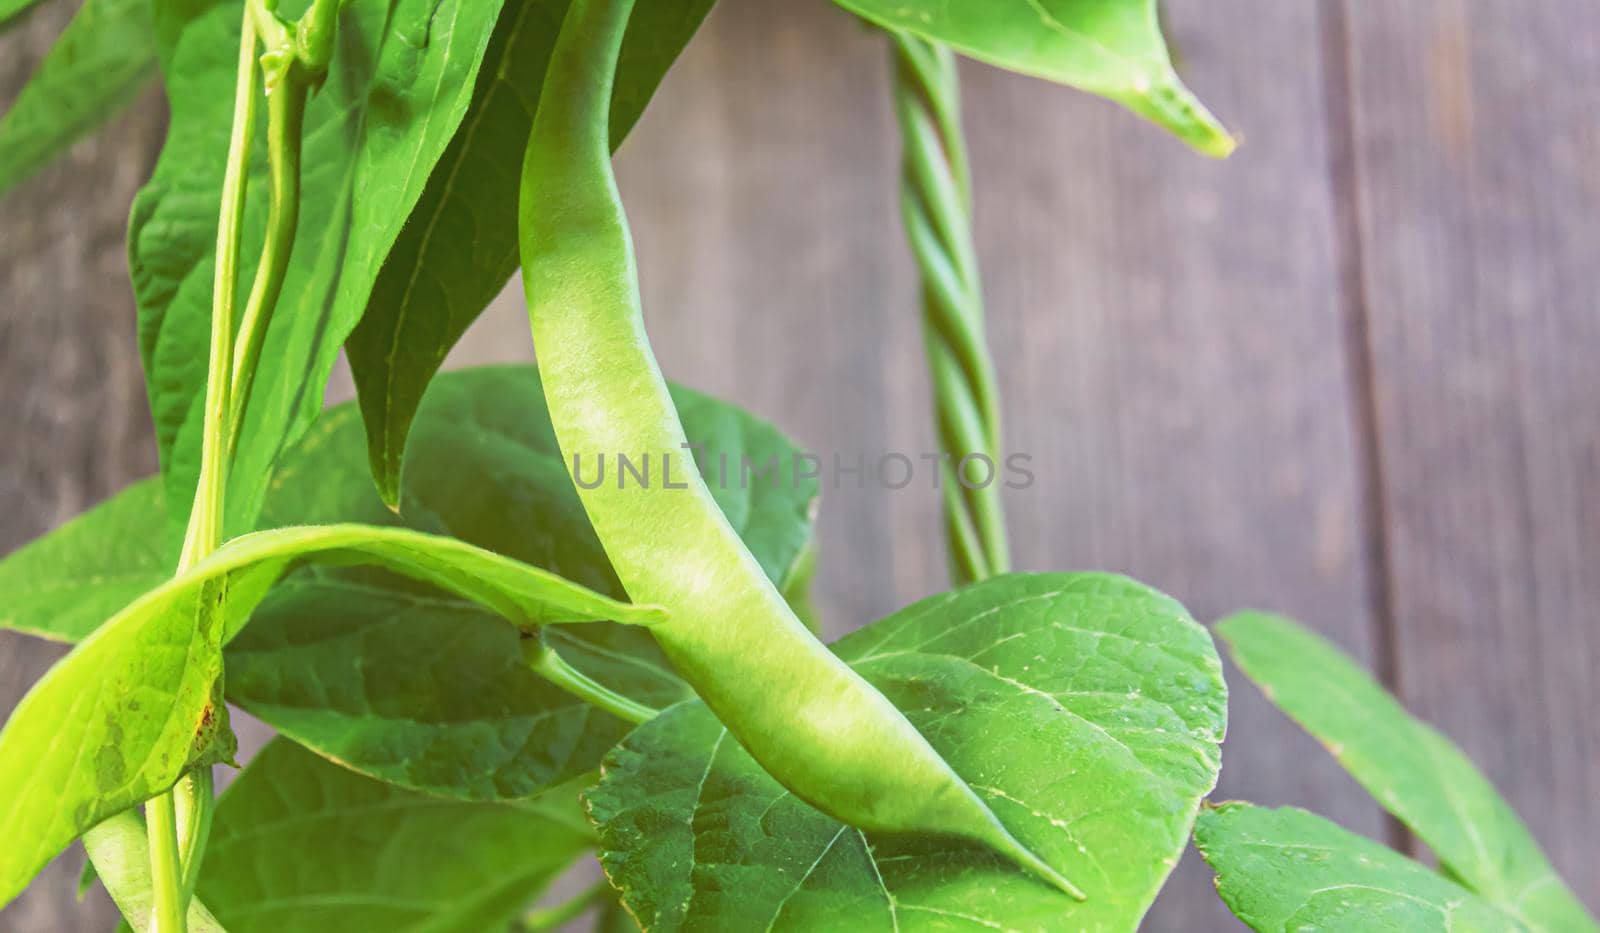 selenium bean pods in garden. selective focus by mila1784